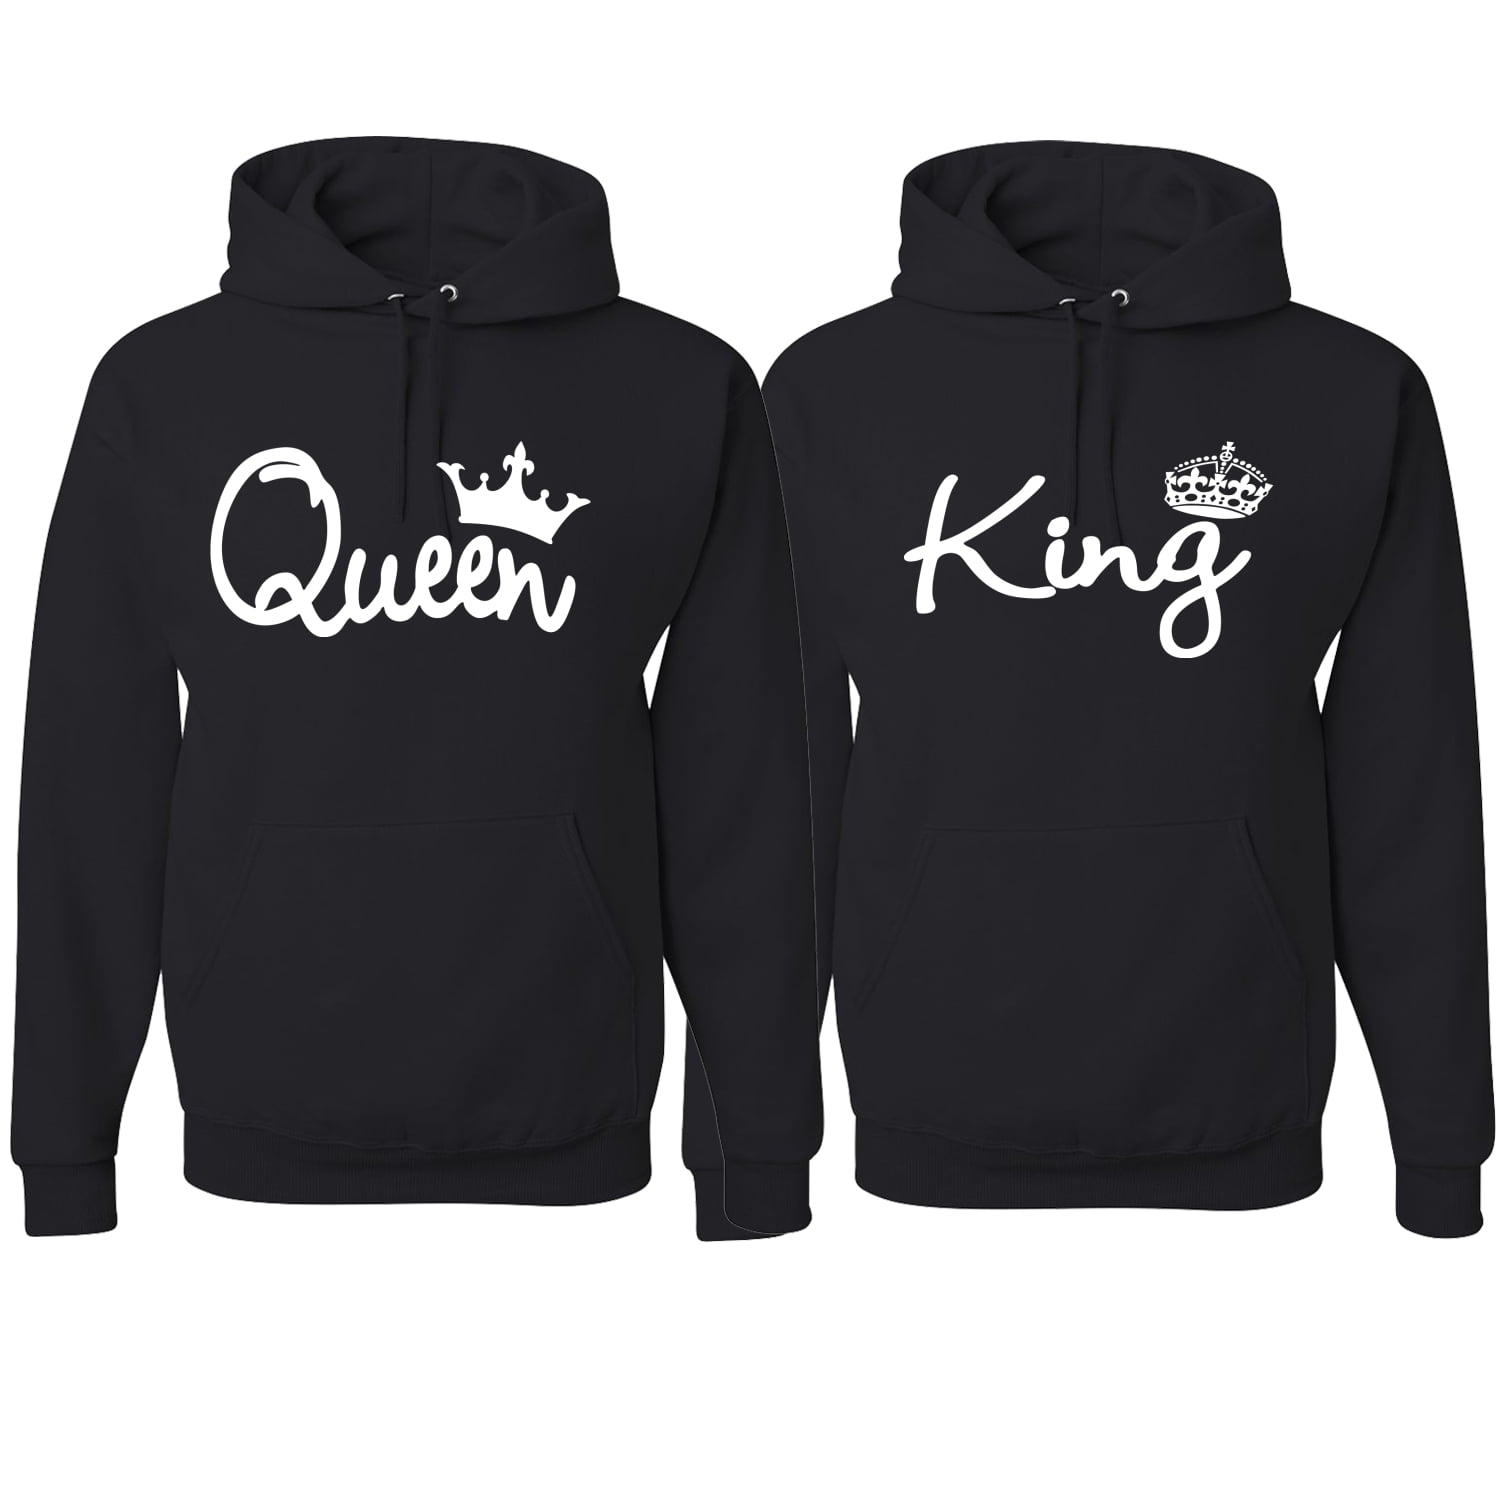 King & Queen Crown Couples Hoodie Sweatshirt Hooded Coat Jacket Sweater Tops 